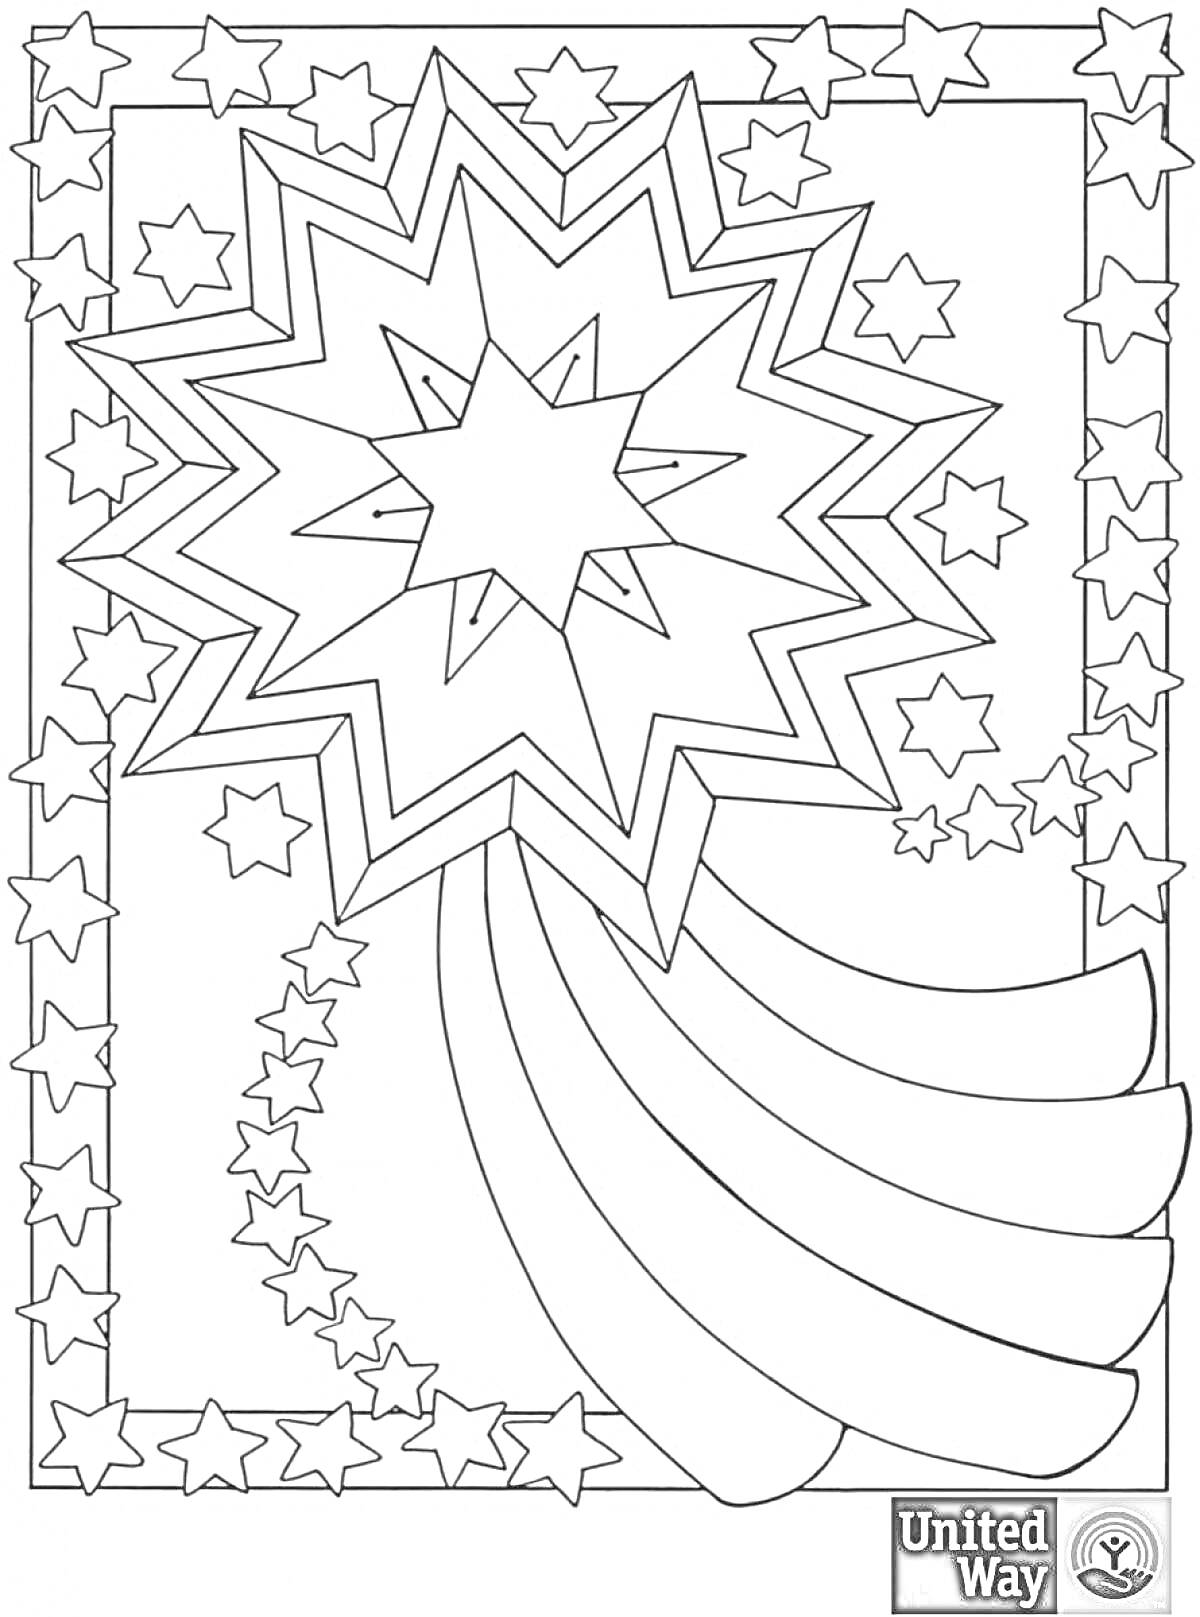 рождественская звезда на фоне множества звезд разных размеров, хвост звезды создающий ореол струй, звезды в рамке.